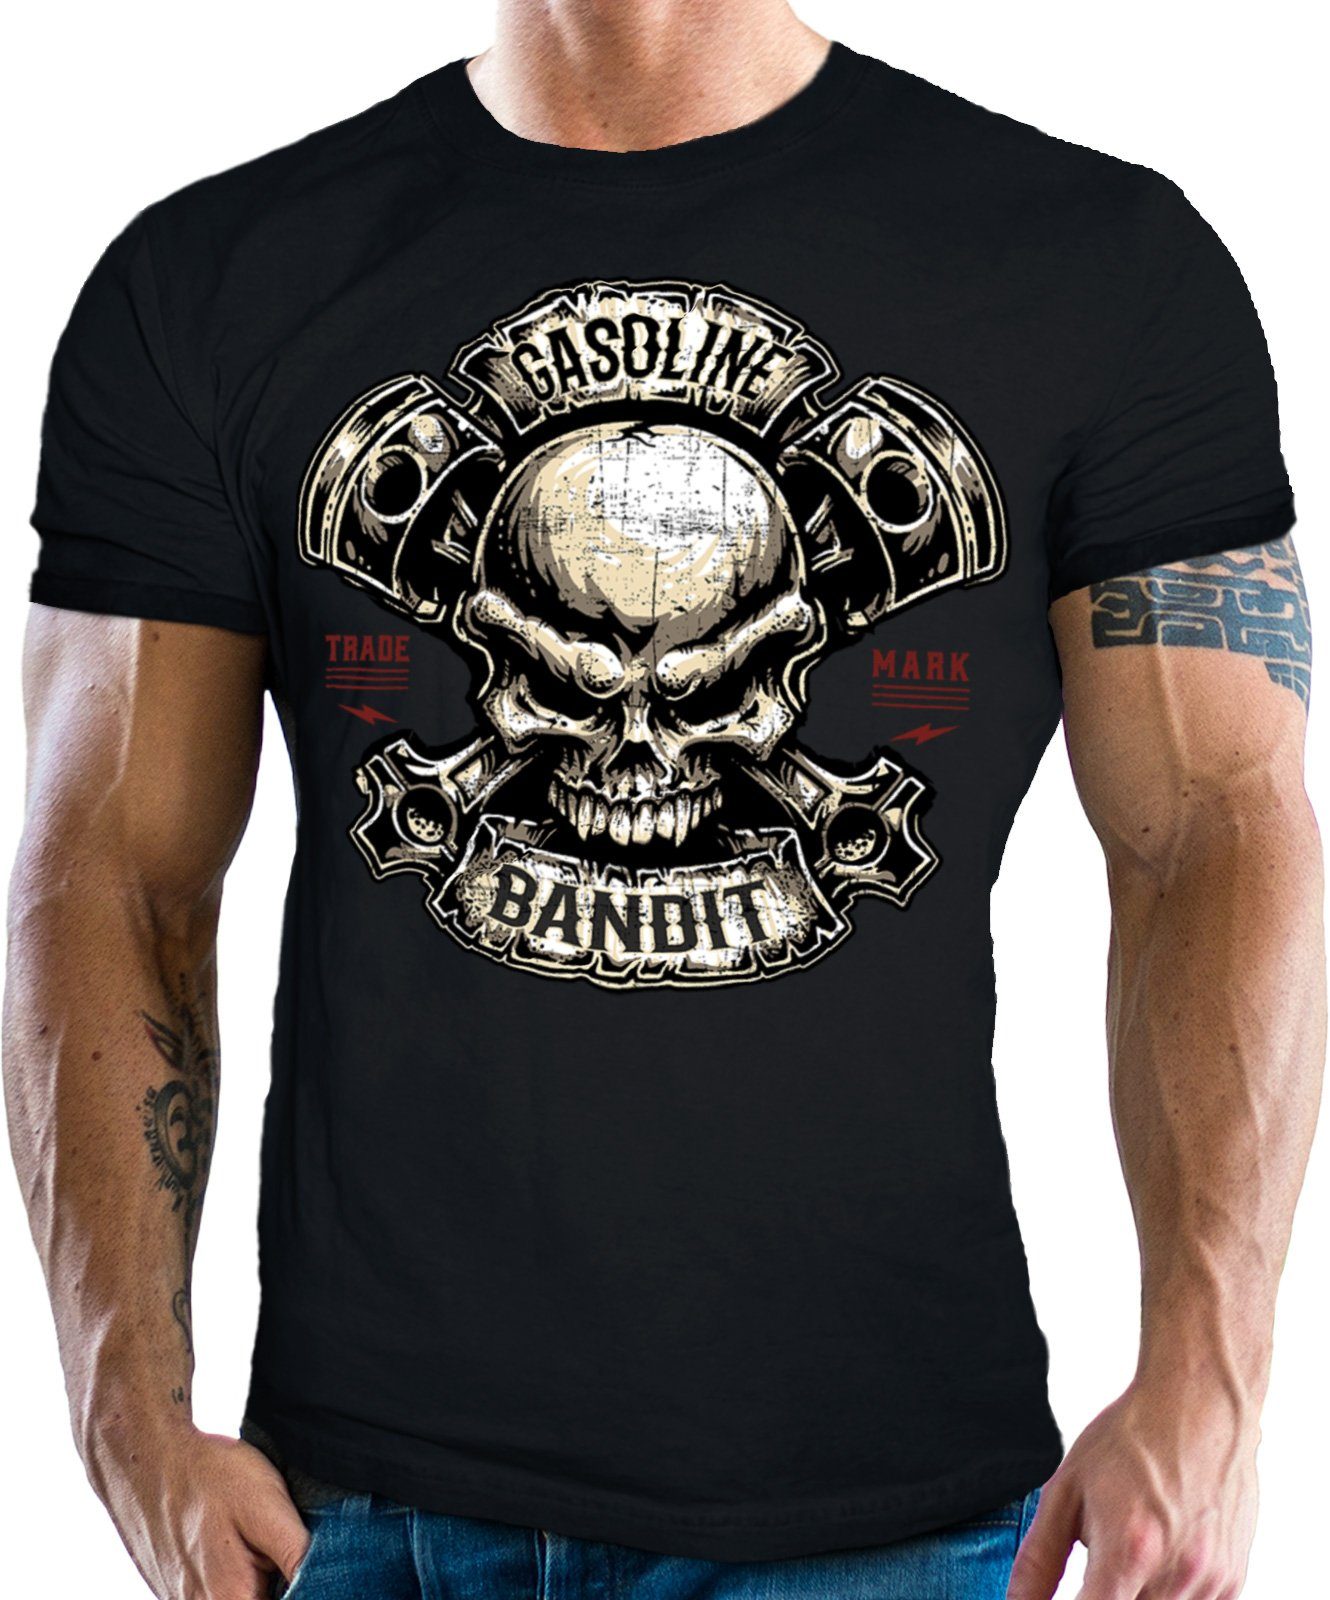 GASOLINE BANDIT® T-Shirt in Piston schwarz Skull Racer für Biker Fans